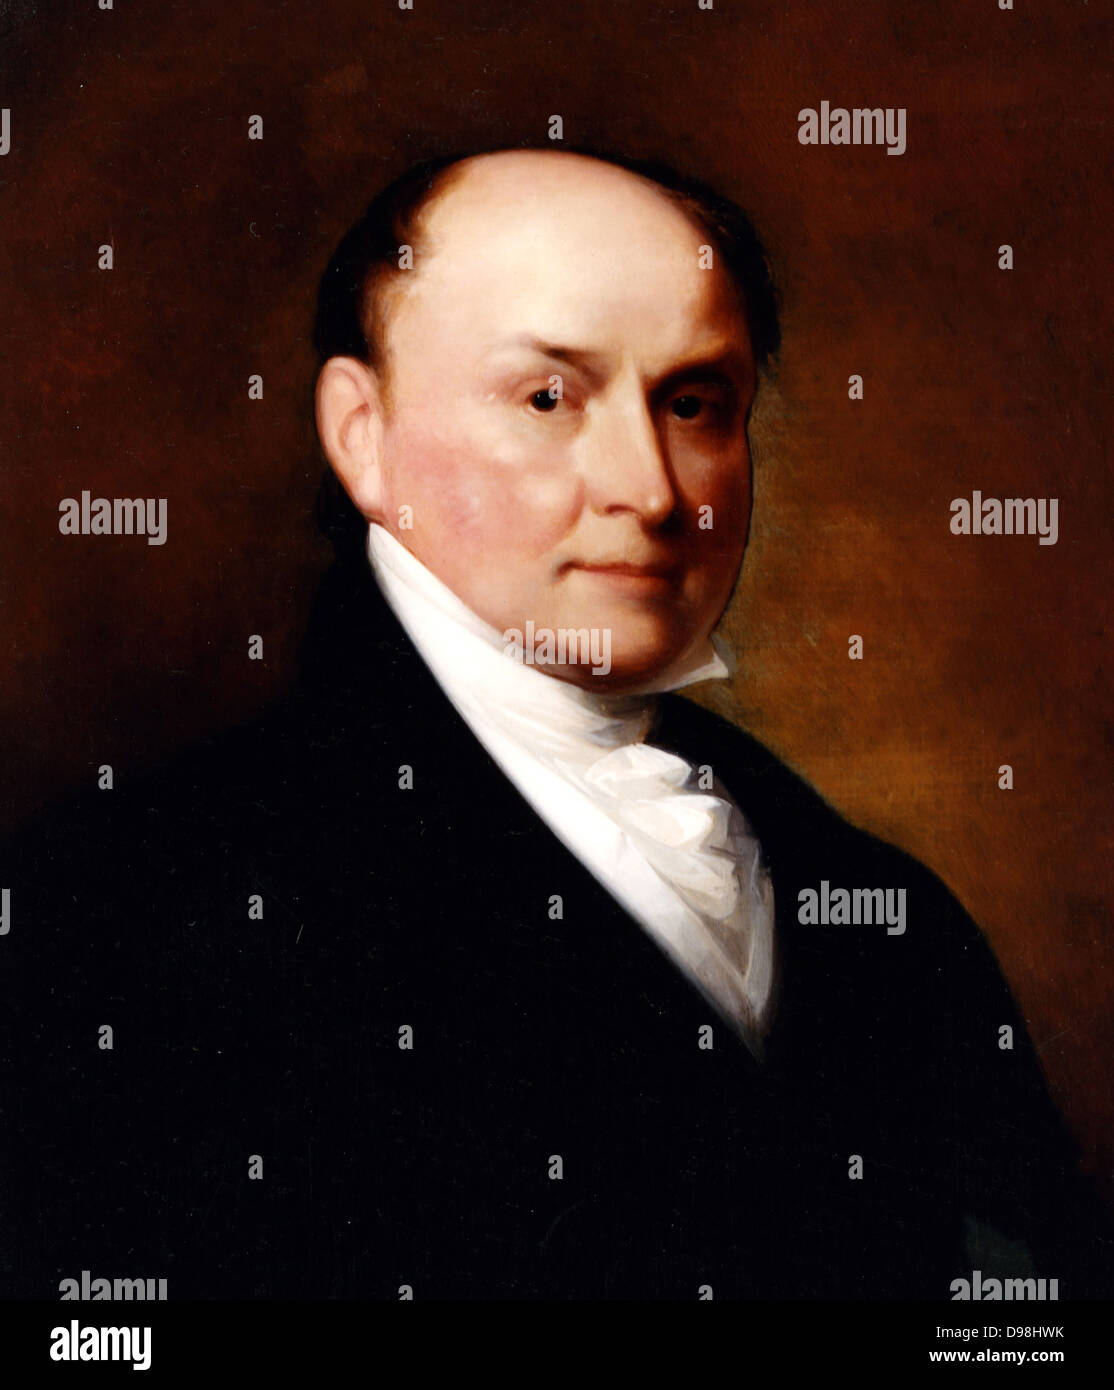 Portrait de John Quincy Adams après Thomas Sully et Gilbert Stuart, 1885. John Quincy Adams 1767 - 1848) a été le sixième président des États-Unis (1825-1829) Banque D'Images